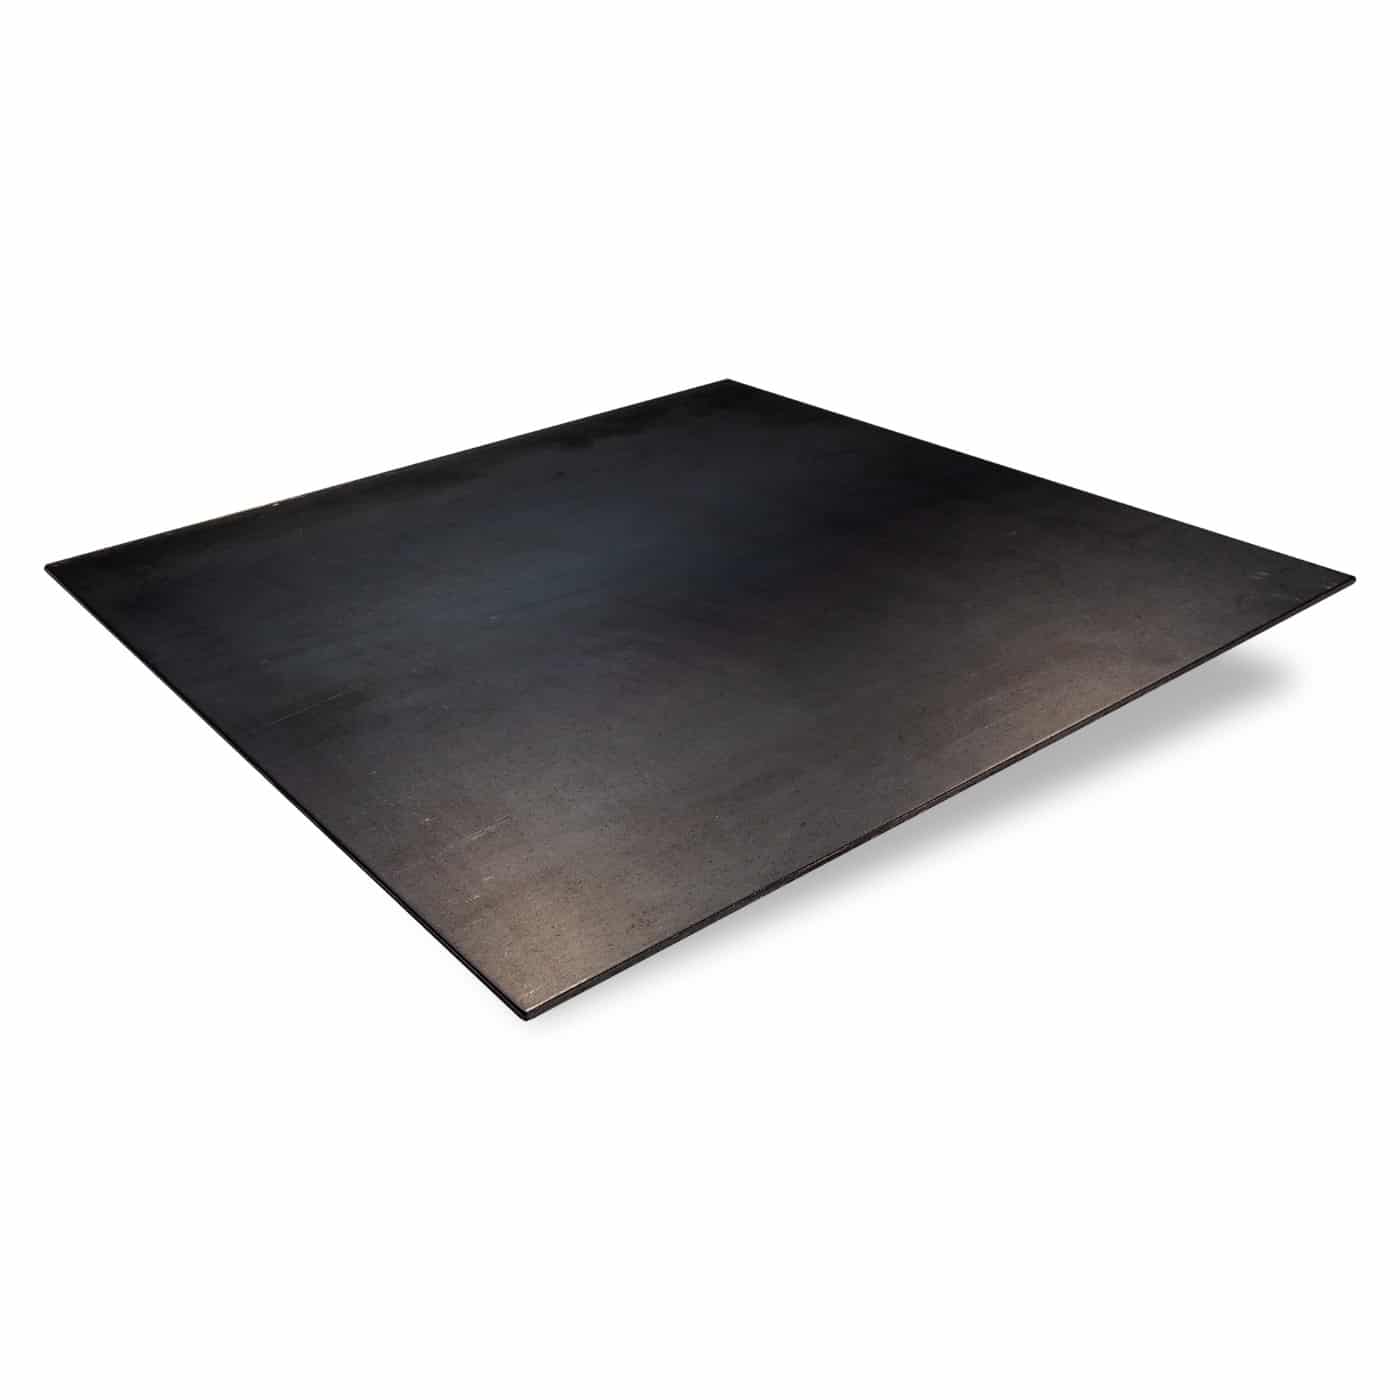 STAHLBLECH 1-3 MM 400x400mm Zuschnitt Stahl Blech Stahlplatte Metall EUR  5,04 - PicClick IT